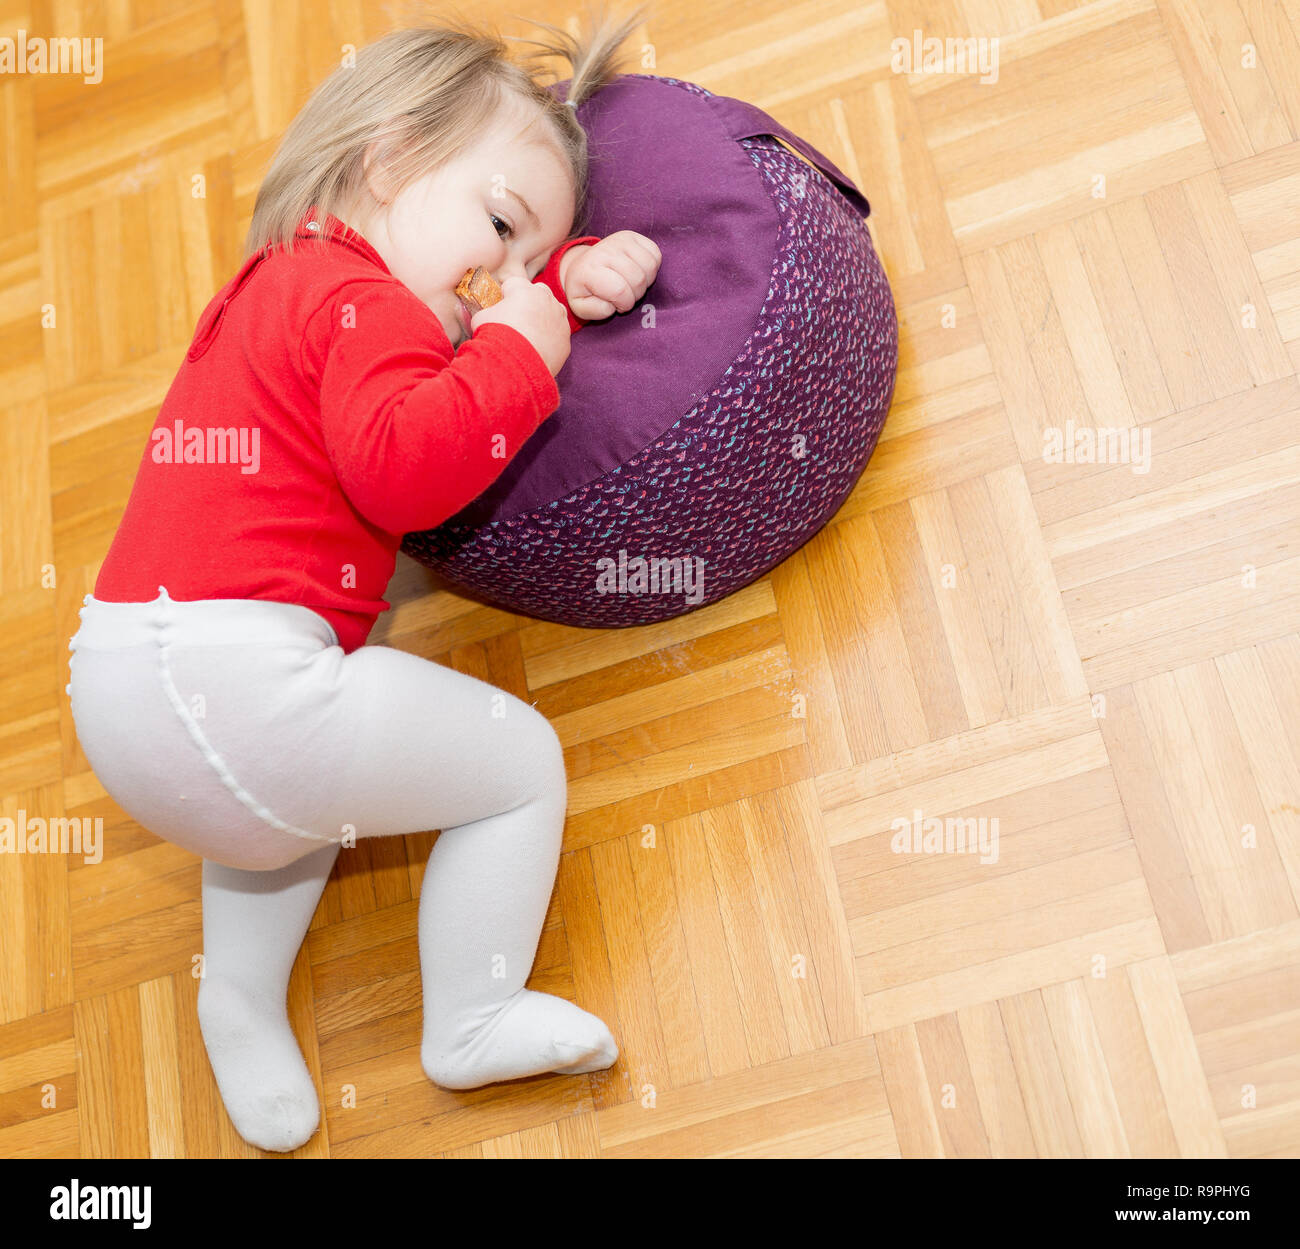 Süße Baby Mädchen essen ein Stück Brot auf dem Boden Stockfotografie - Alamy